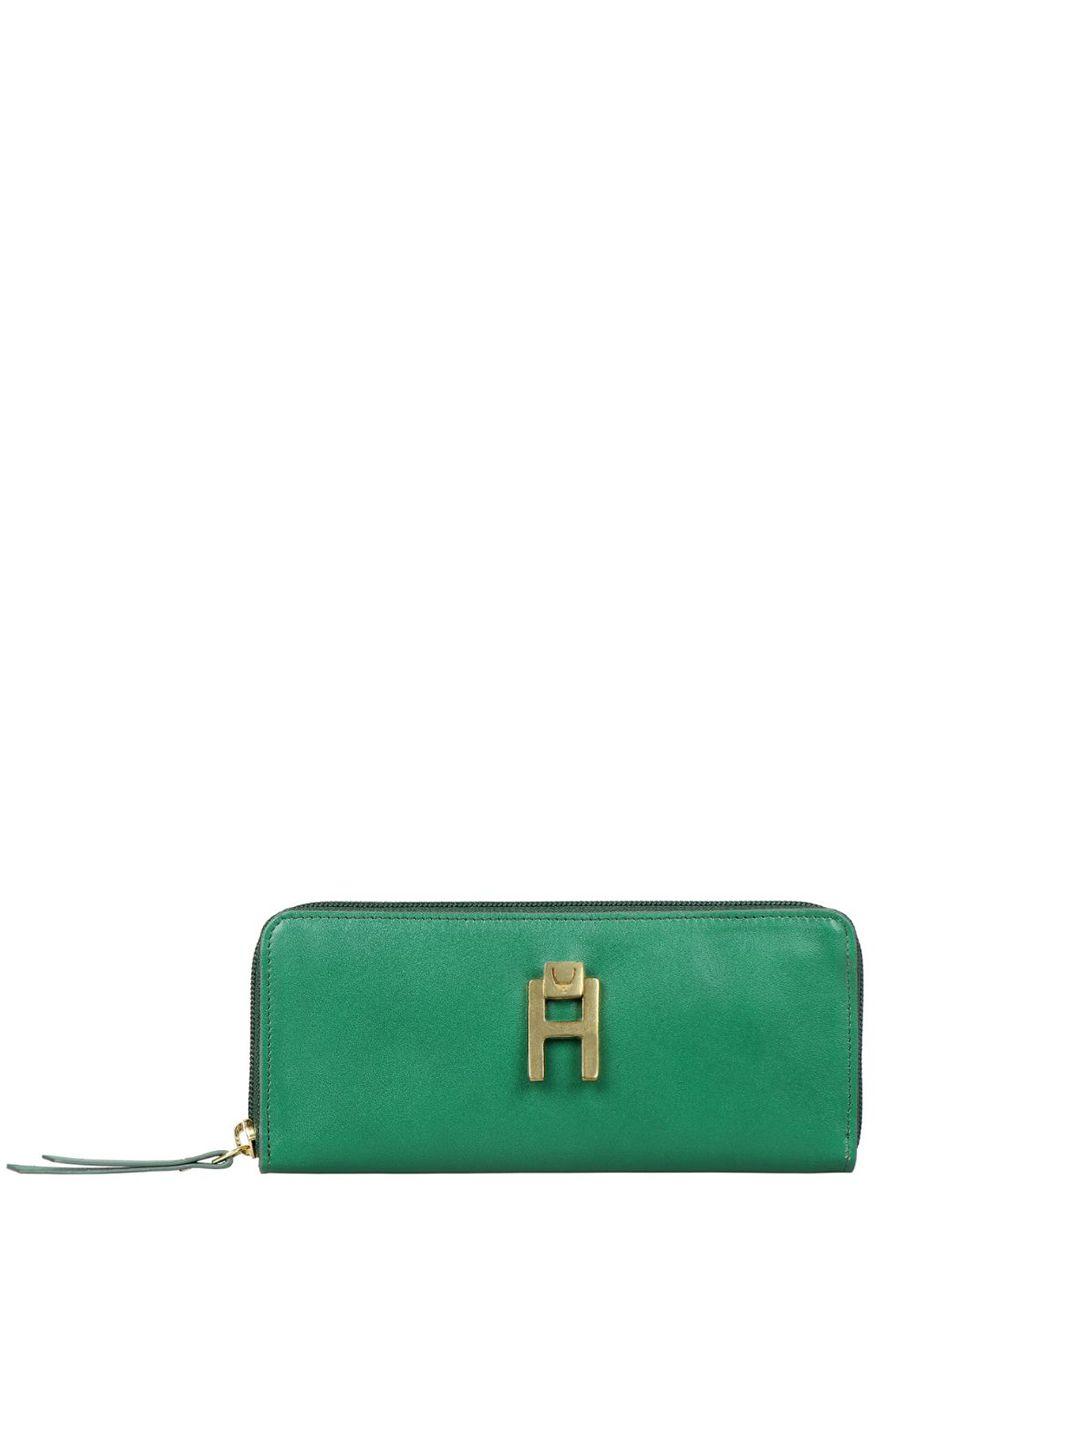 hidesign women green purse